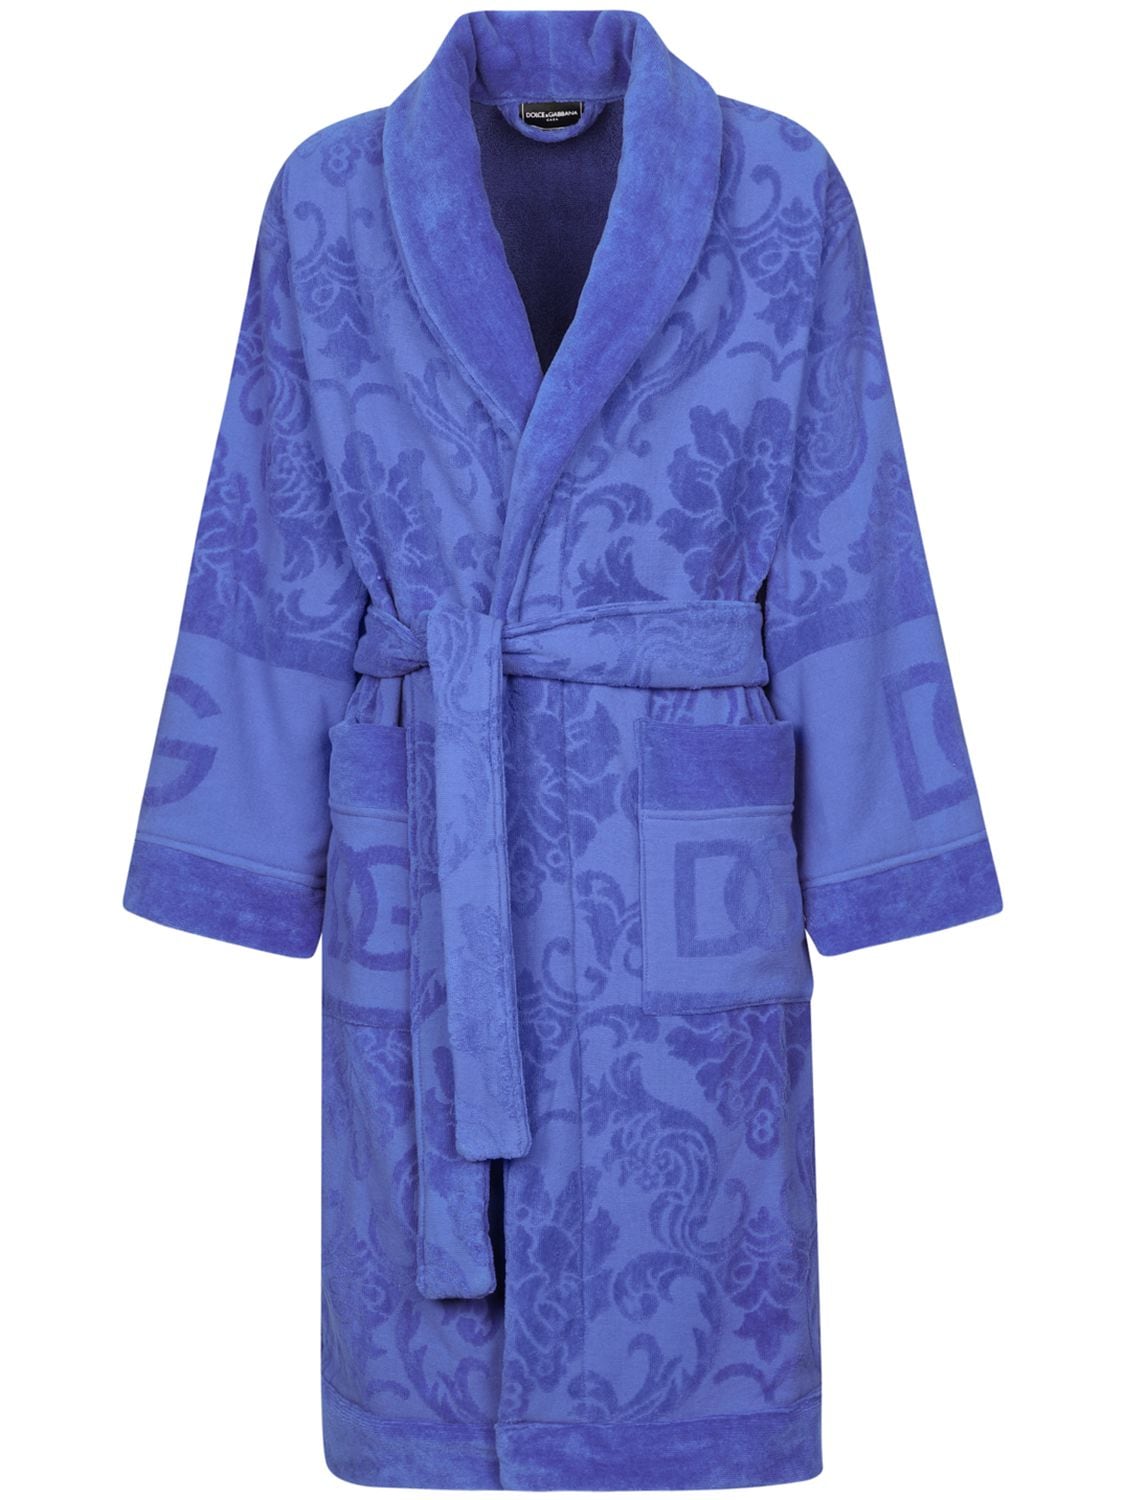 Dolce & Gabbana Jacquard Bathrobe In Blue